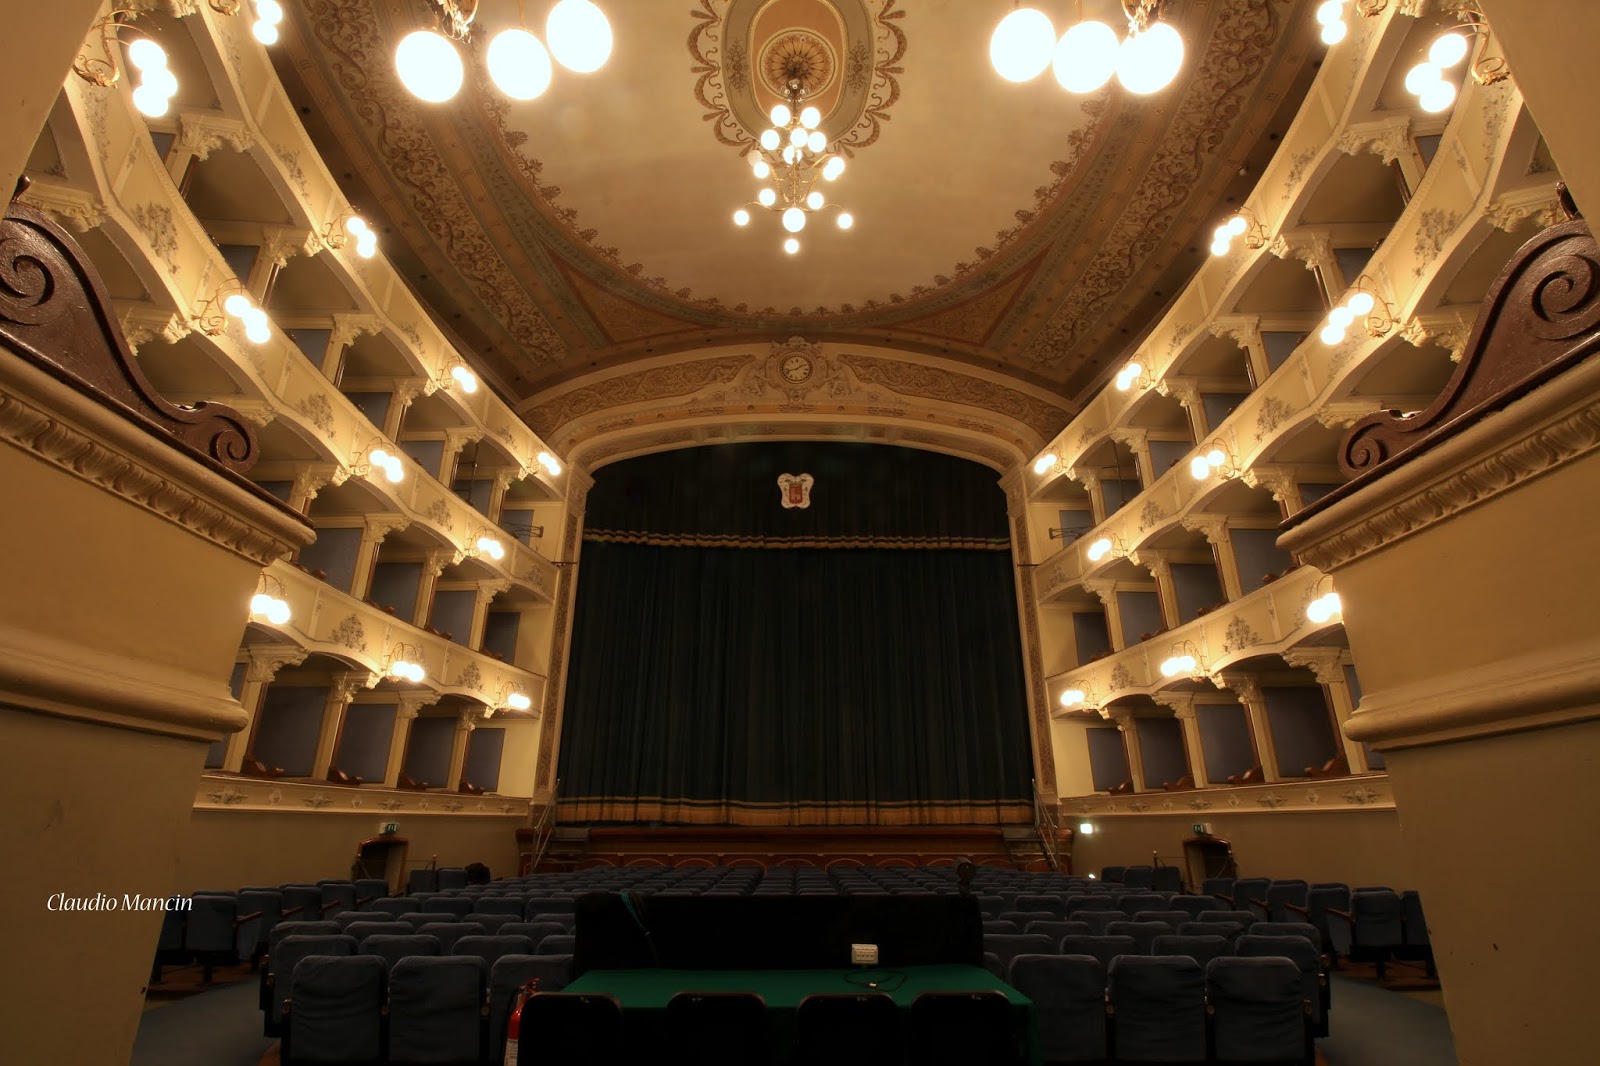 Cagnoni Theatre - Vigevano